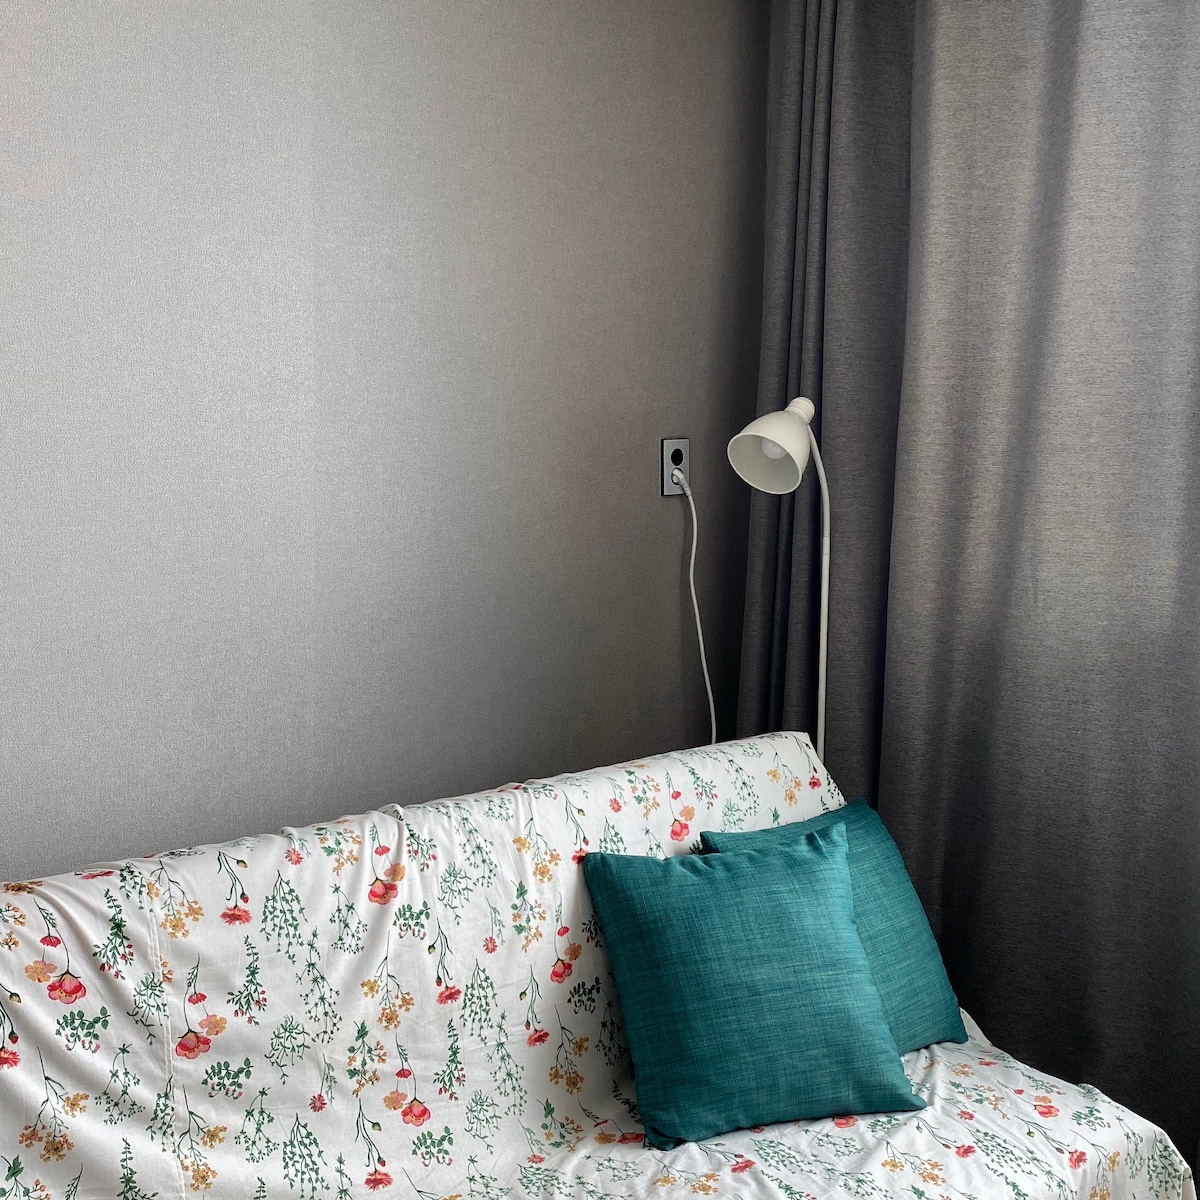 Nonsan Airbnb_flower-sleep Nonsan airbnb